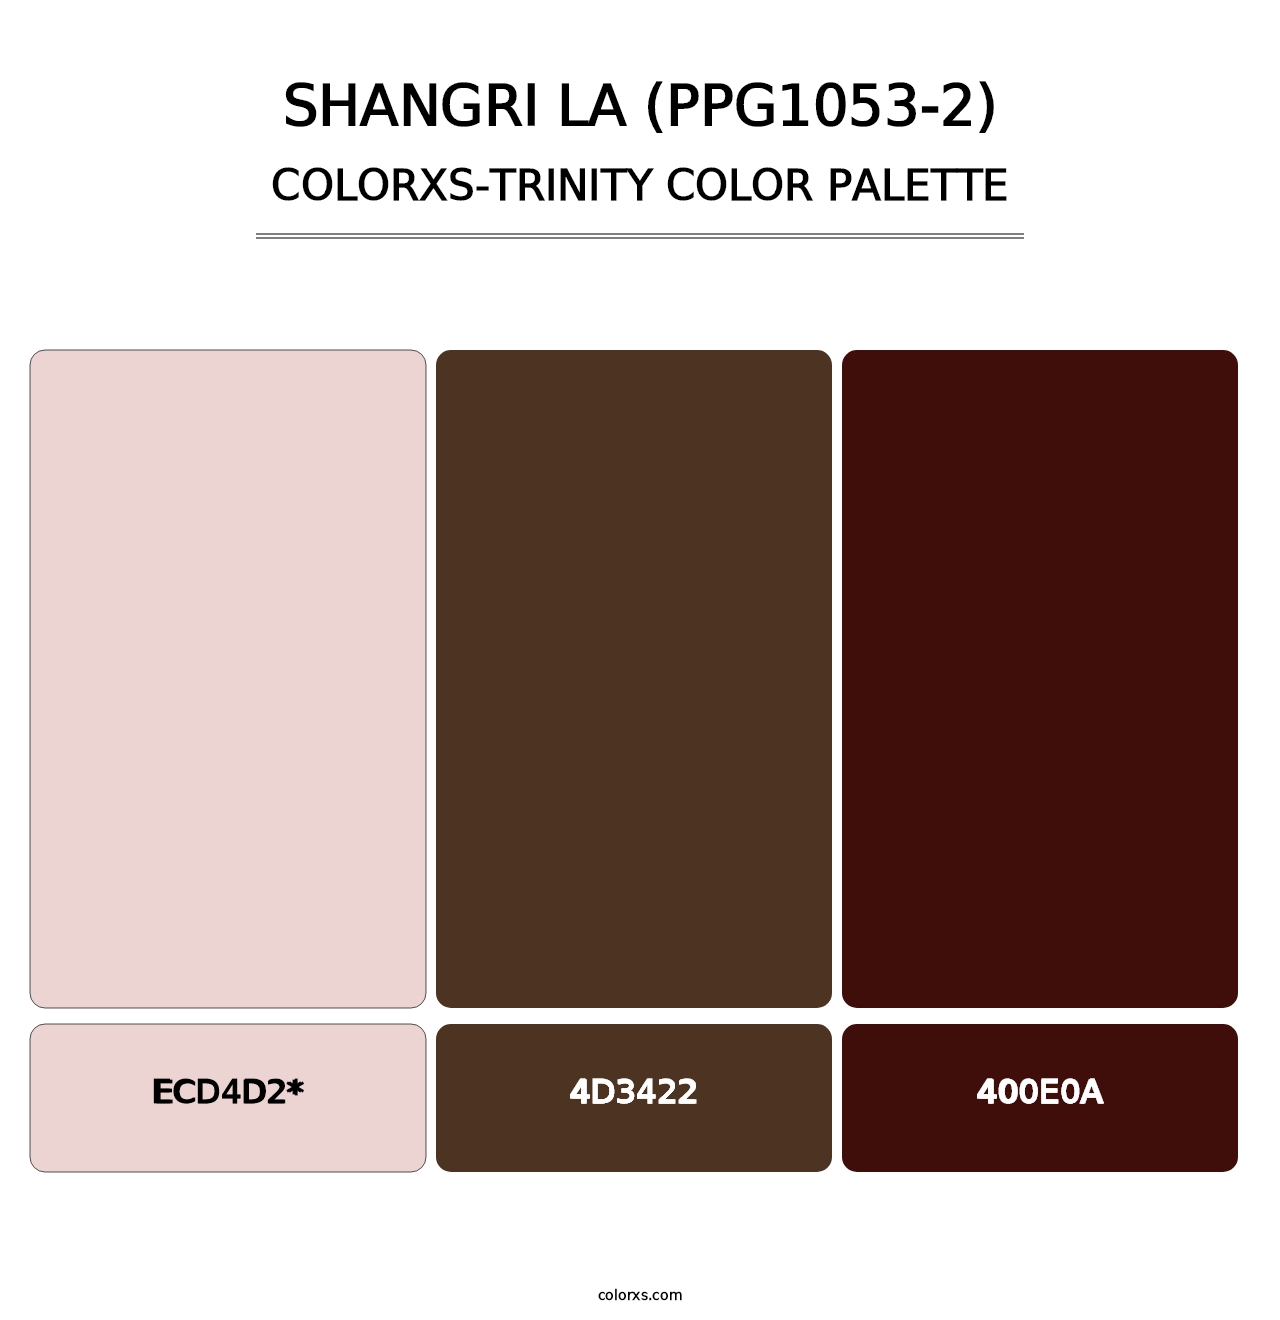 Shangri La (PPG1053-2) - Colorxs Trinity Palette